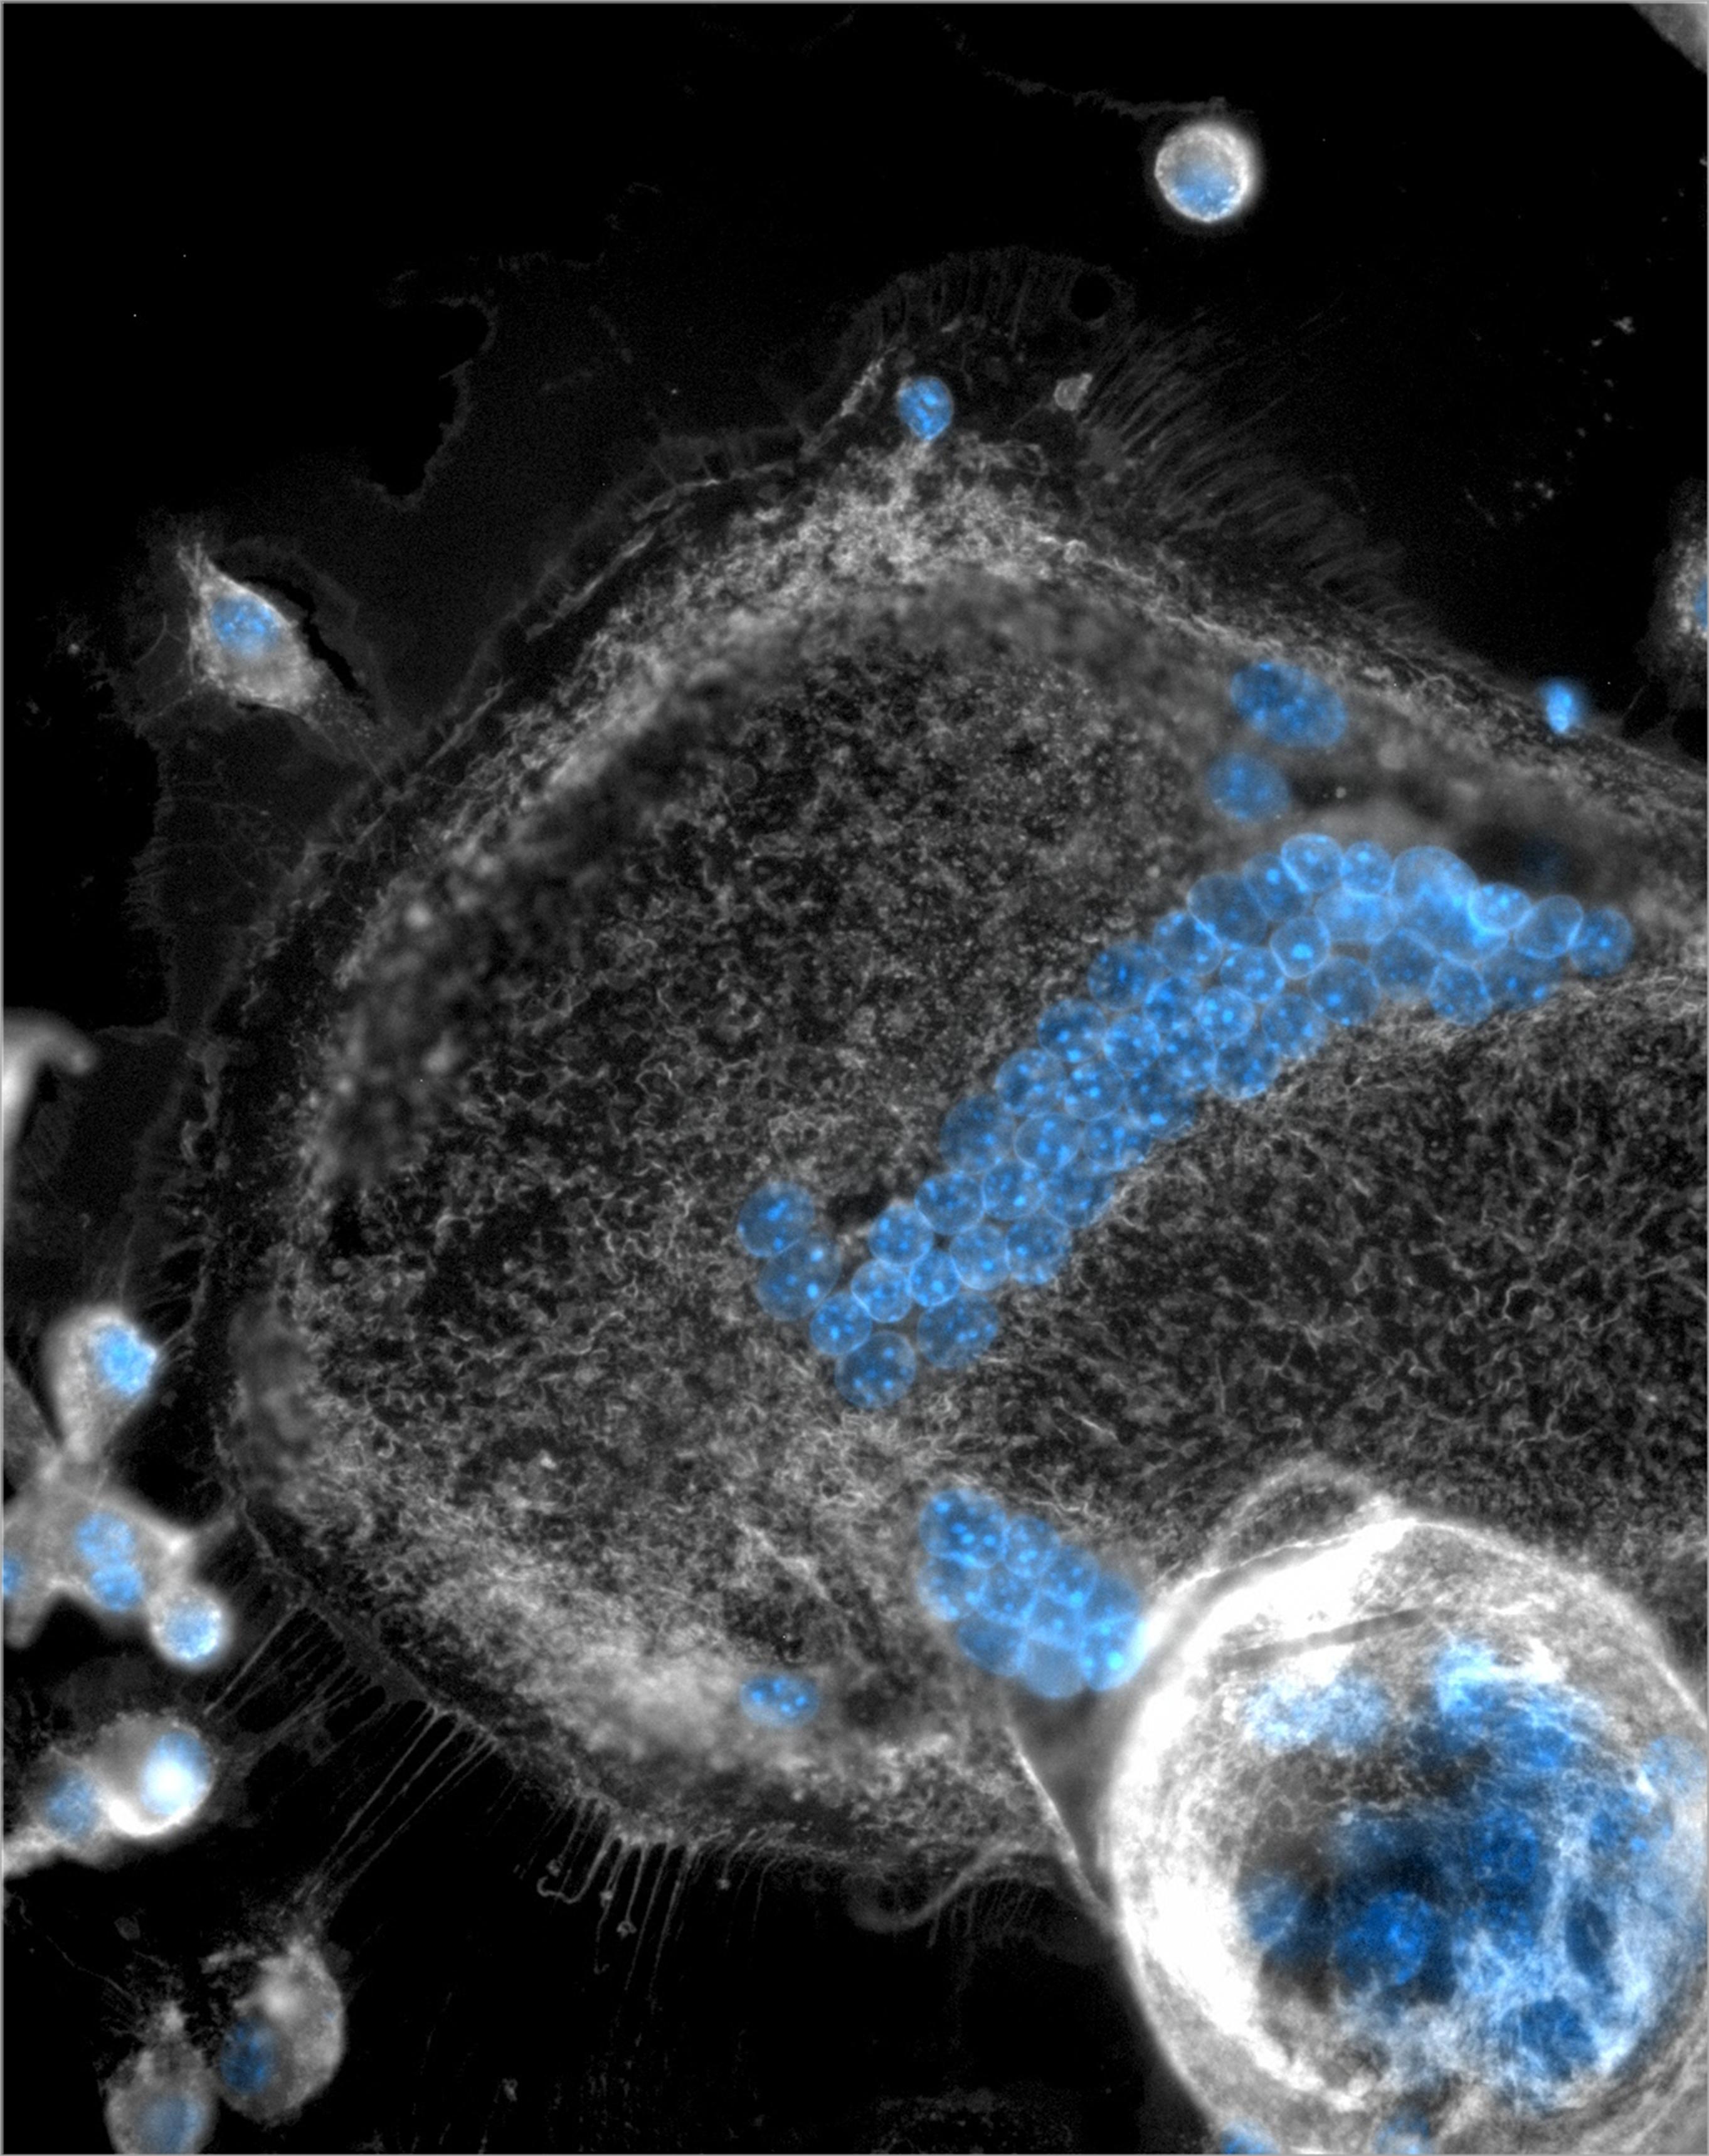 MGCs und Fresszellen (Makrophagen) wurden mit Membran-spezifischen (grau) und Zellkern-spezifischen (blau) Farbstoffen gefärbt. Auf dem Bild sind zwei Riesenzellen zu sehen (Mitte und unten links), die von einigen kleineren, einzelligen Fresszellen umgebe